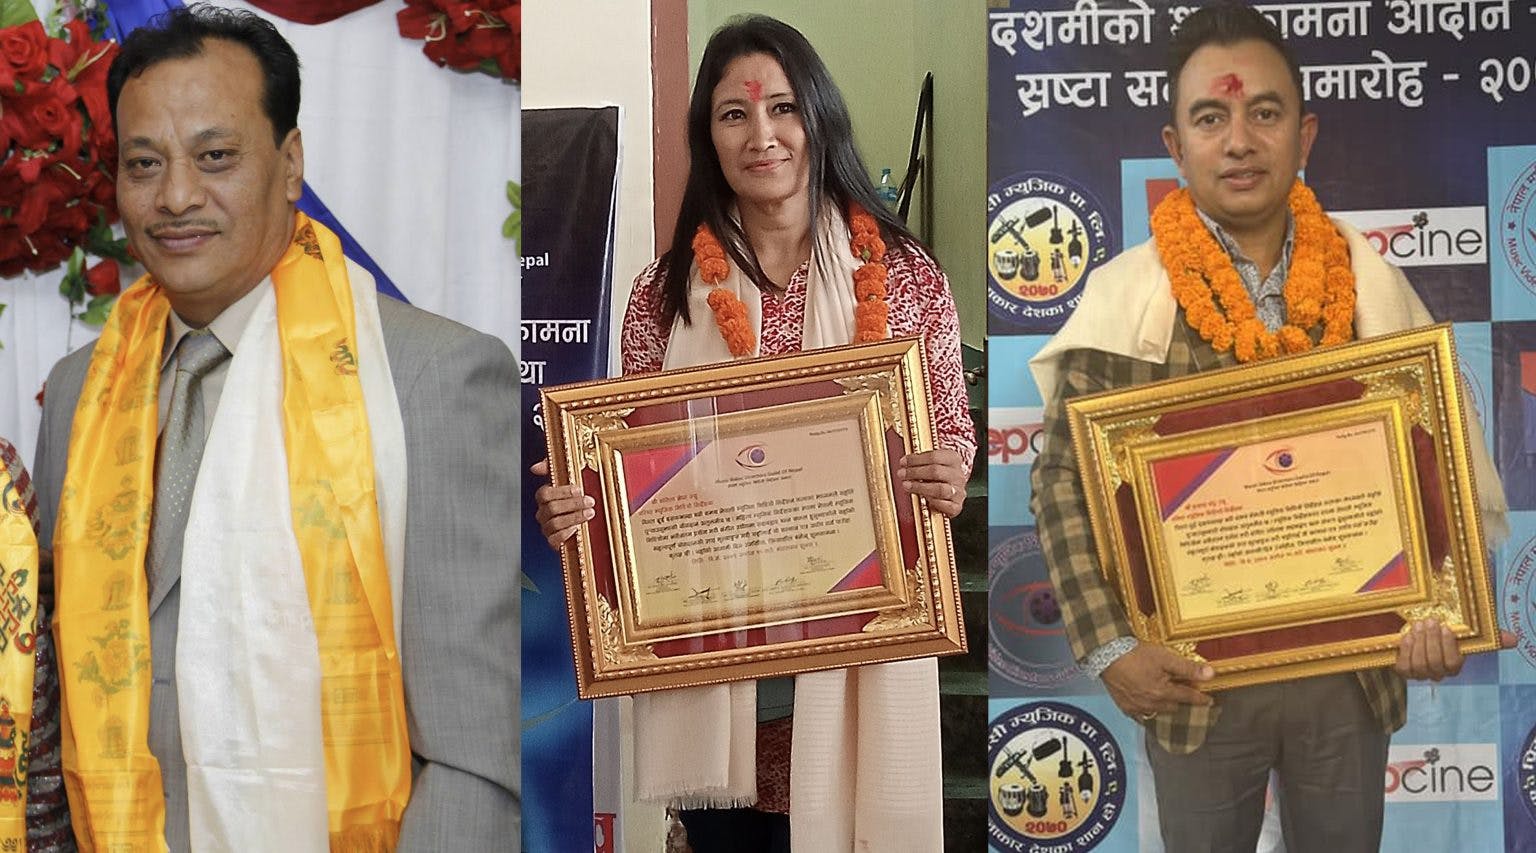 Senior directors Traya Sahendra, Prakash and Sangeeta honored